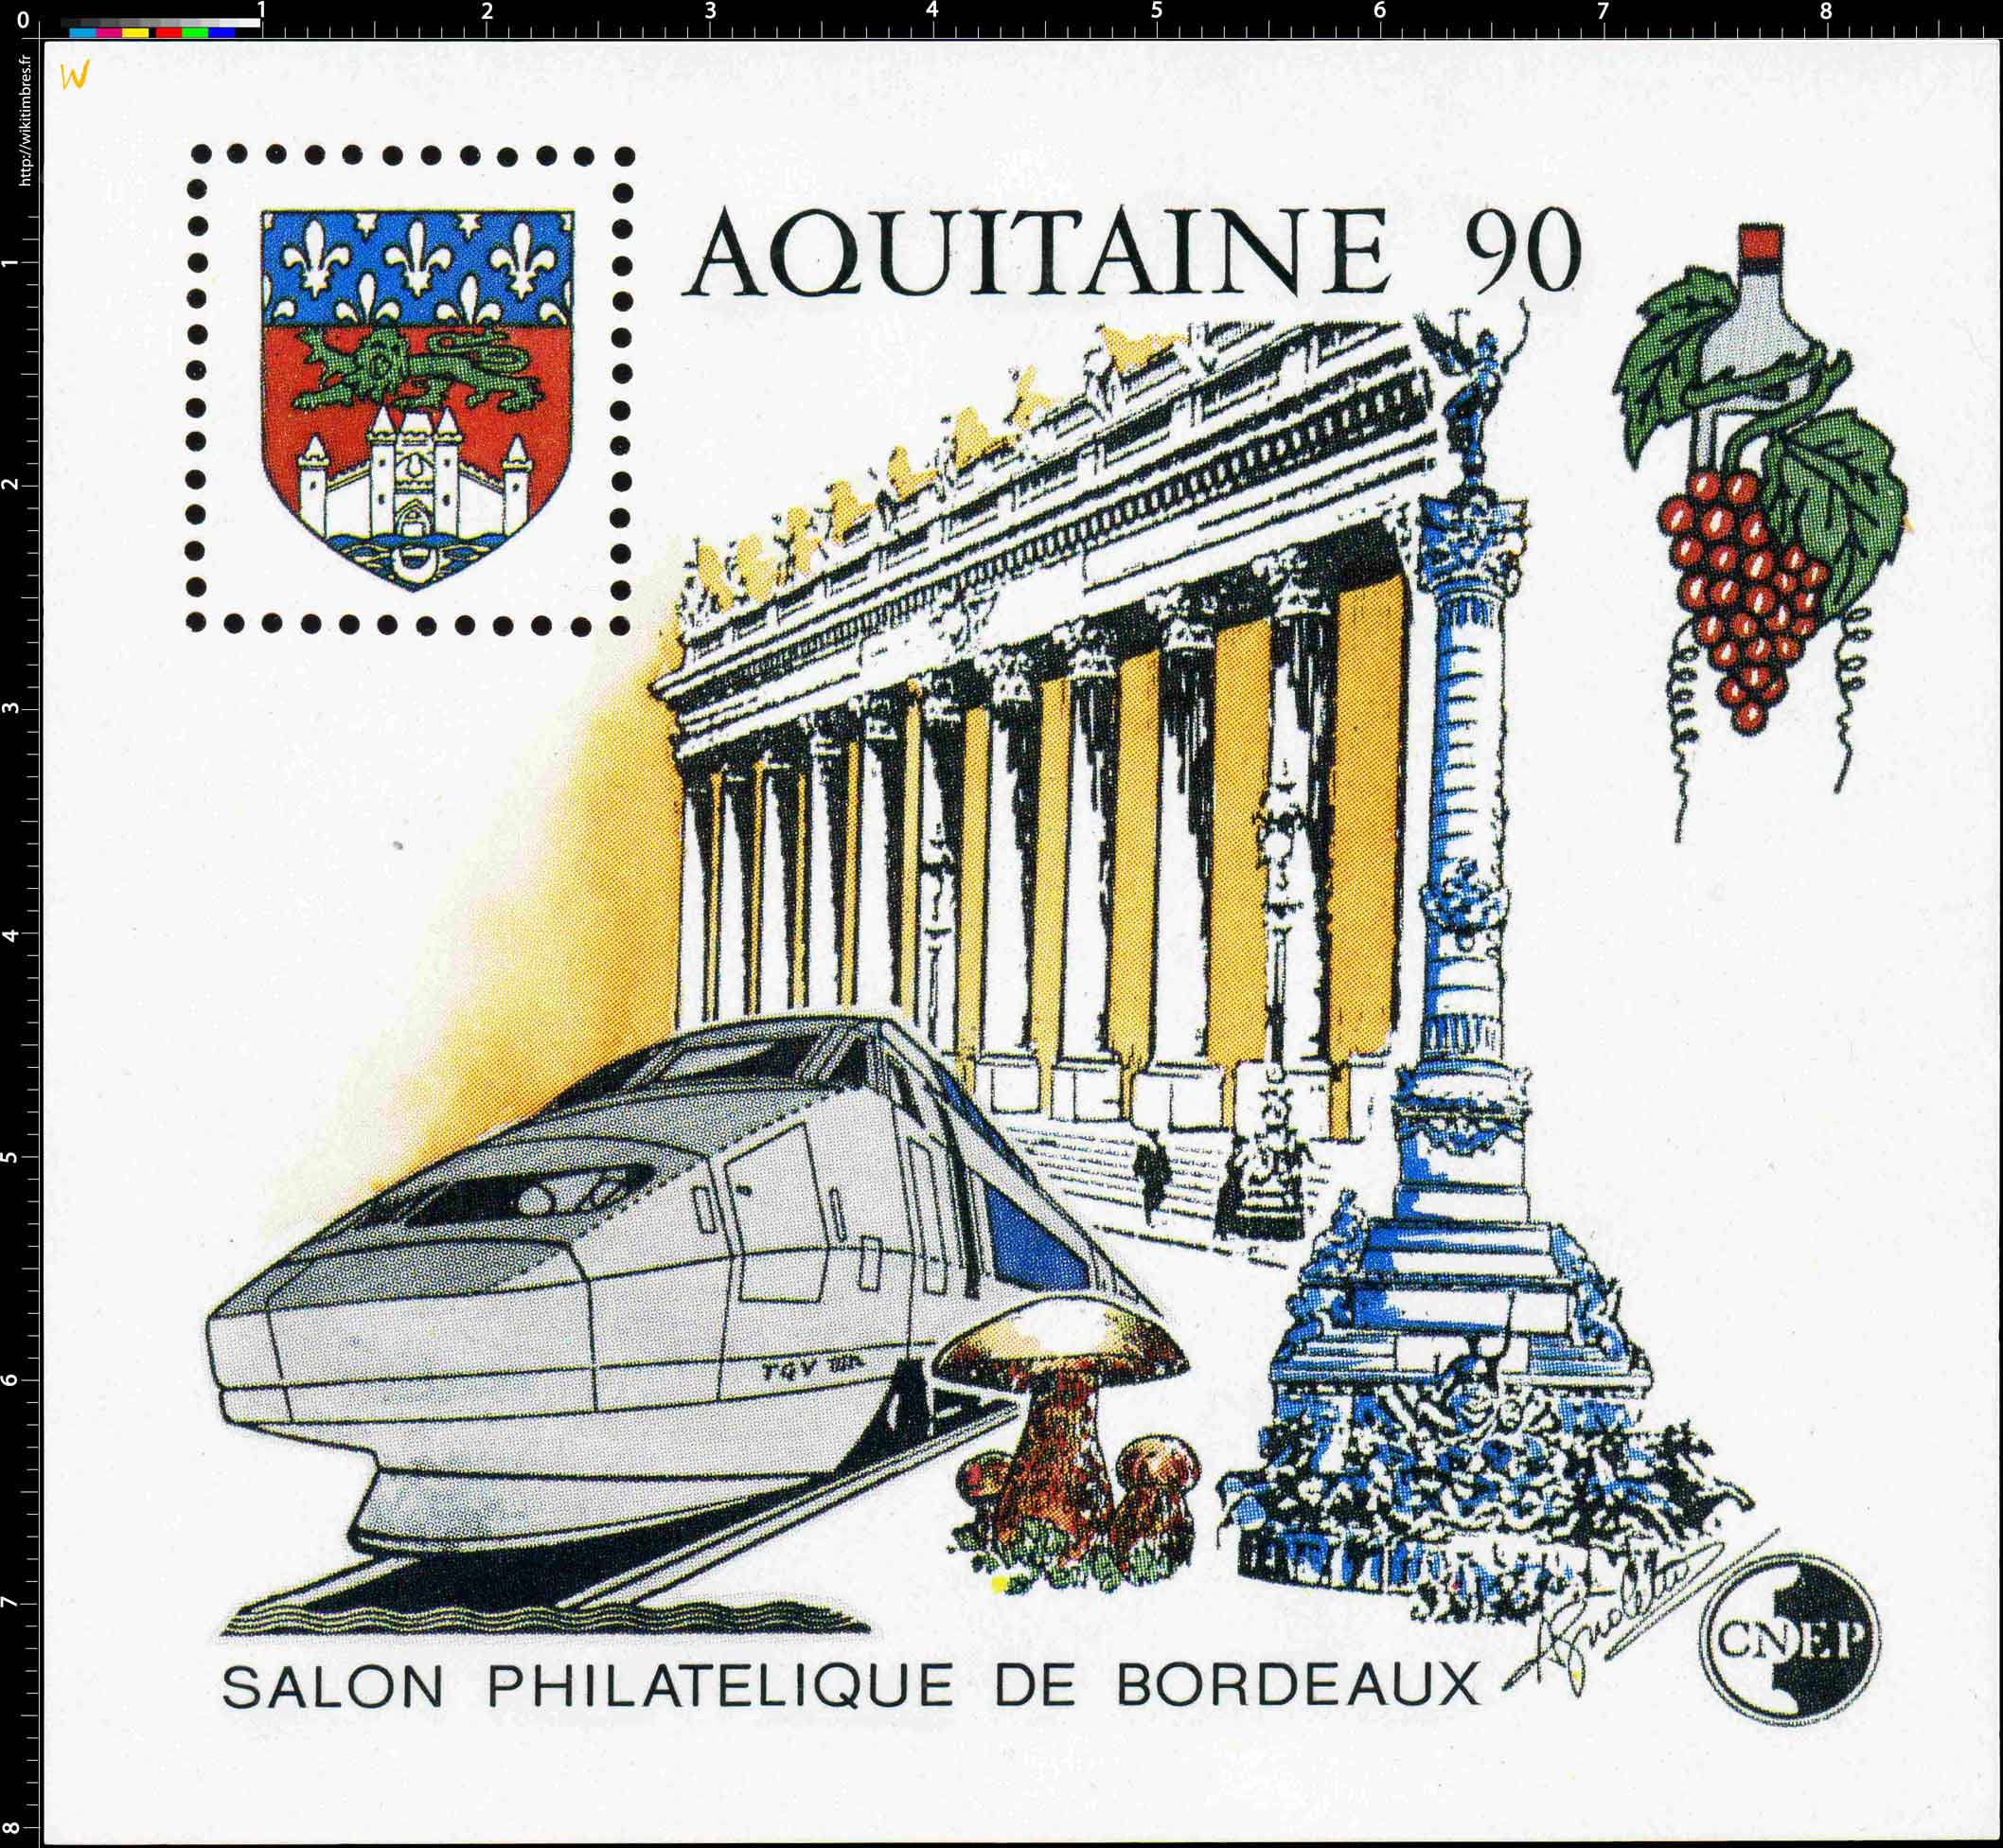 90 Aquitaine Salon philatélique de Bordeaux CNEP